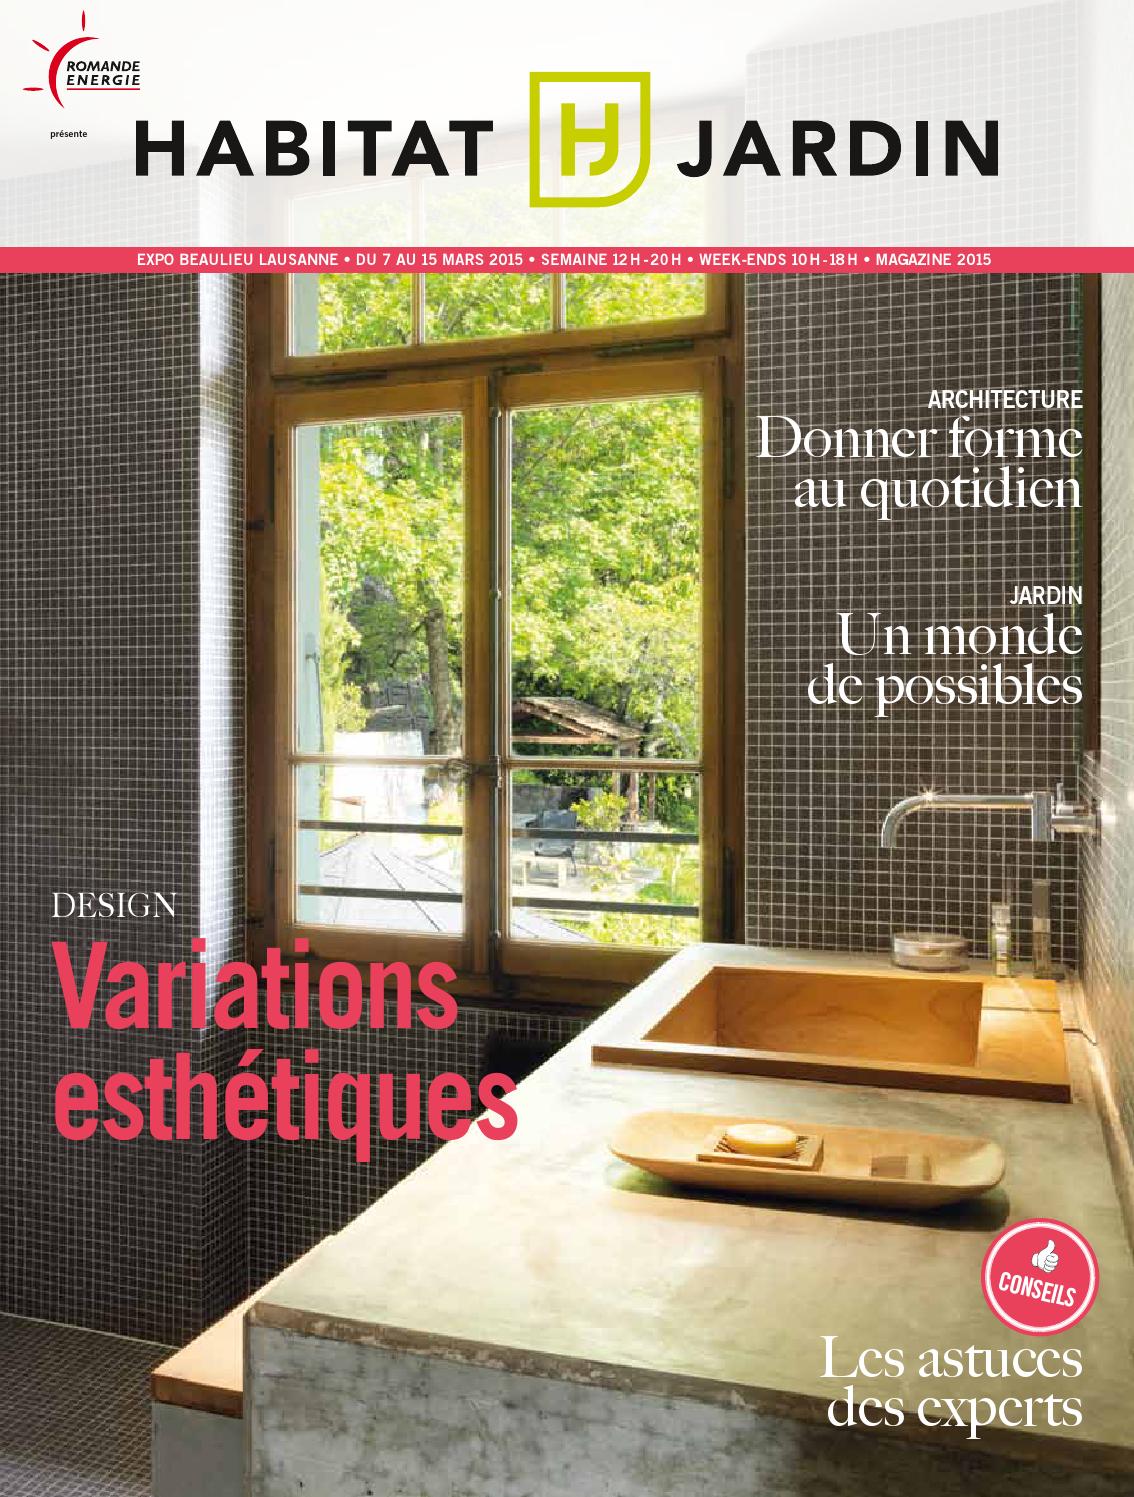 Aménagement Jardin En Pente Douce Élégant Habitat Jardin 2015 Magazine by Inédit Publications Sa issuu